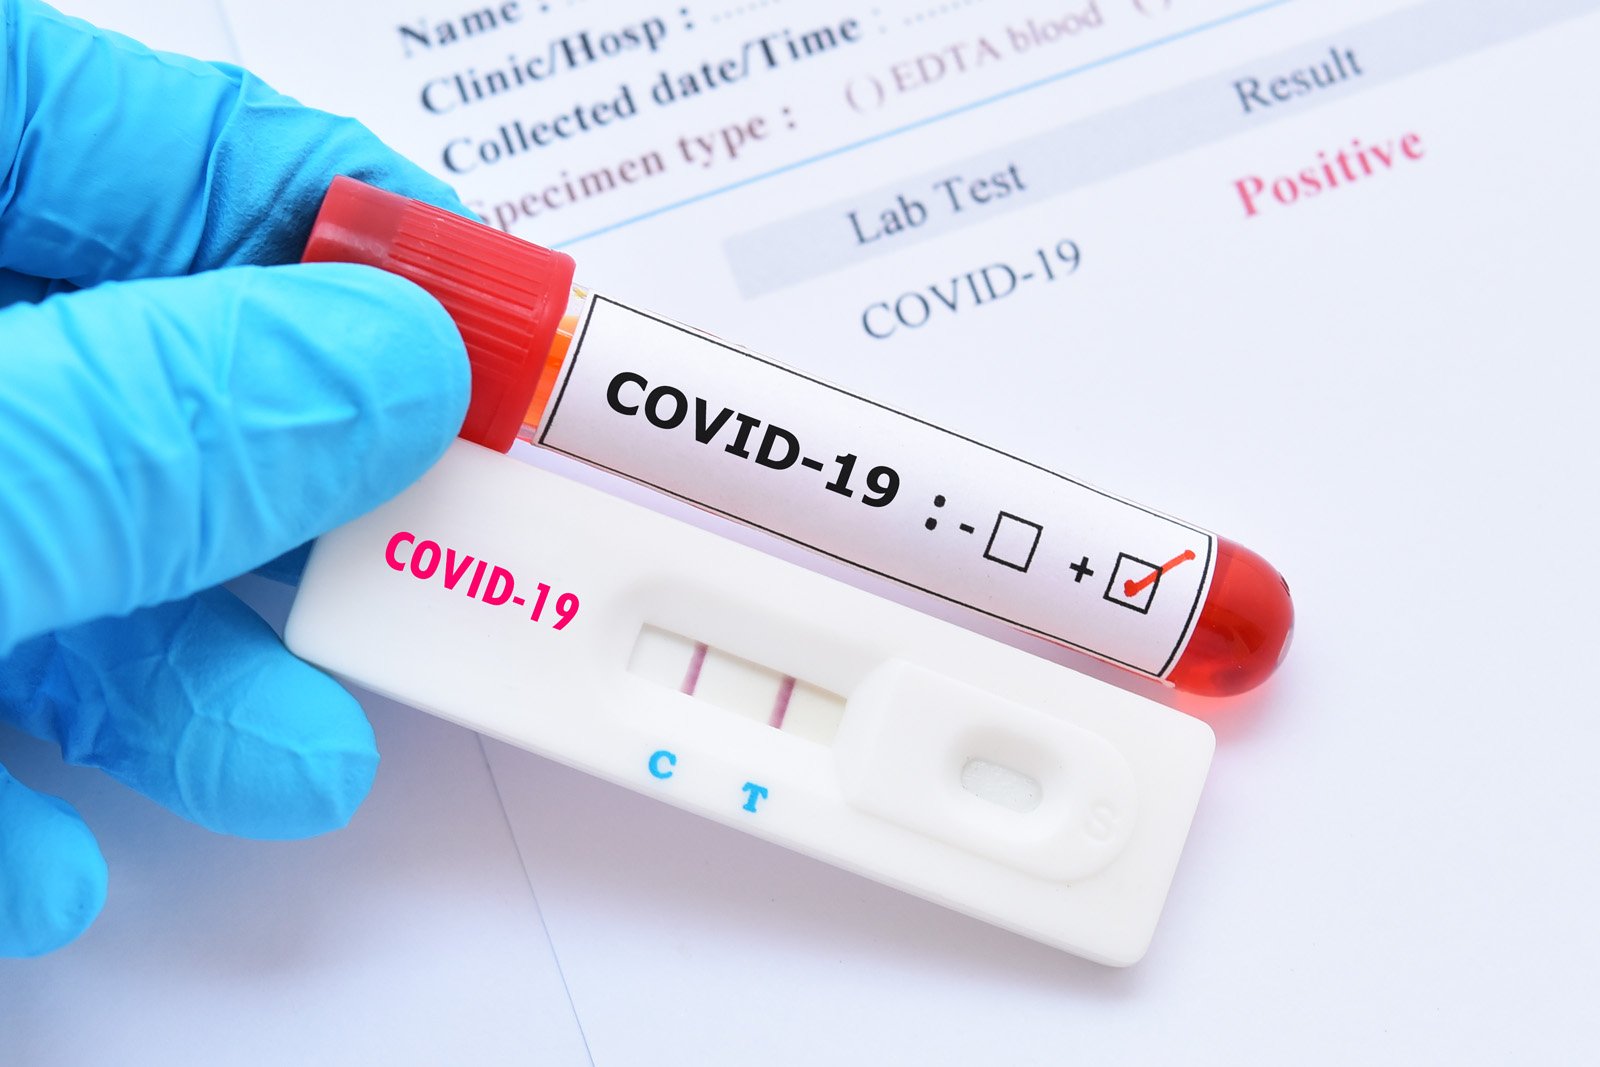  Ce trebuie să faceți dacă aflați că sunteți infectați cu COVID. Cine sunt contacții?